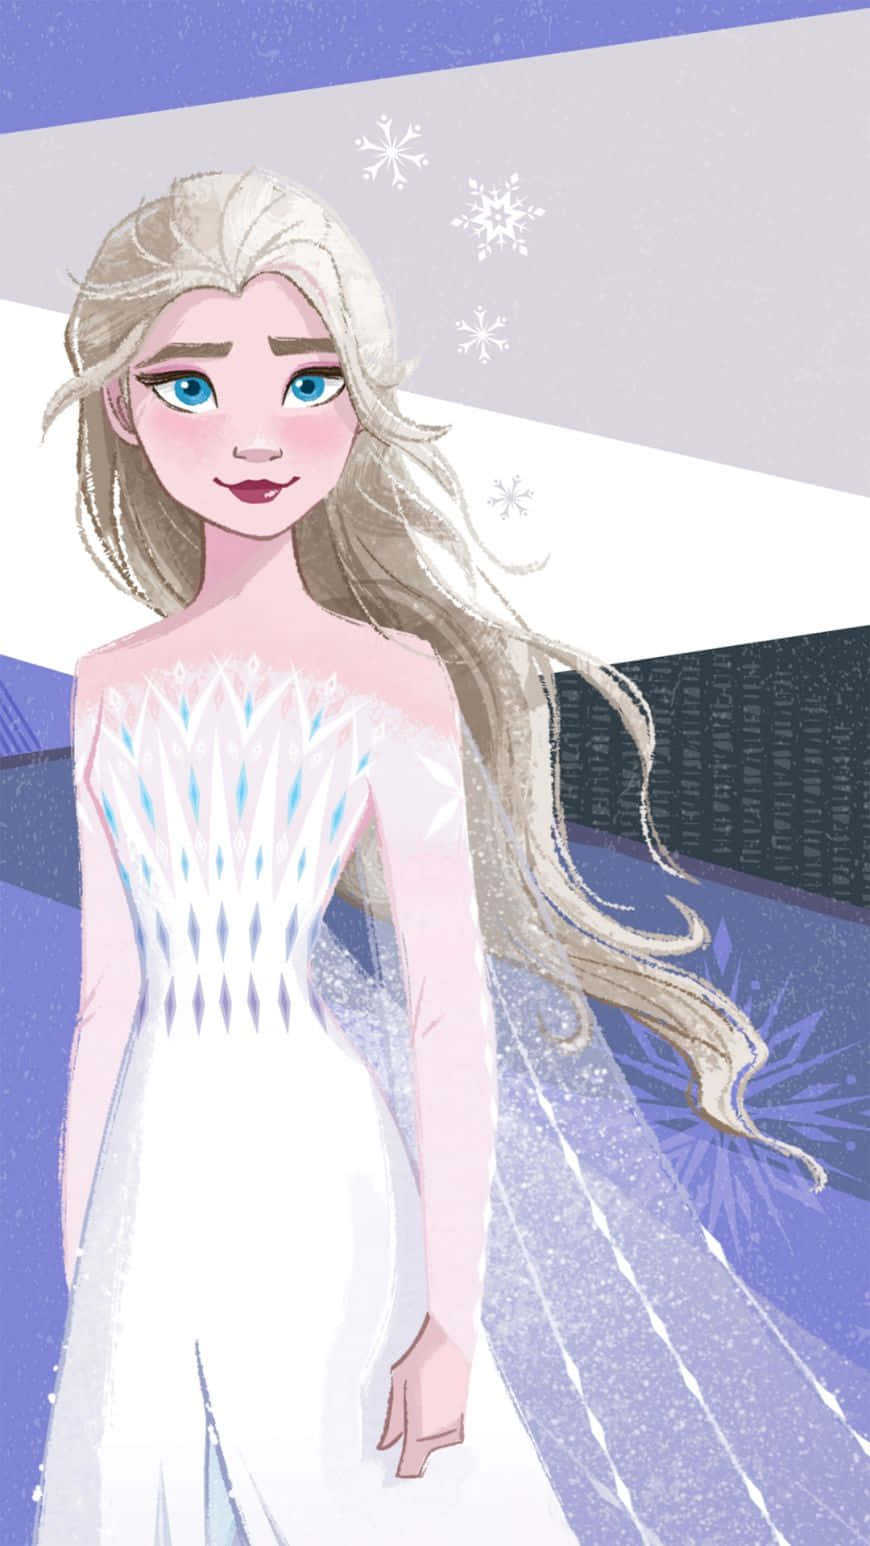 Abraçeo Poder Do Inverno E Siga Os Passos Da Rainha Elsa Com Este Lindo Vestido Branco De Frozen 2, Como Papel De Parede Para O Seu Computador Ou Celular. Papel de Parede